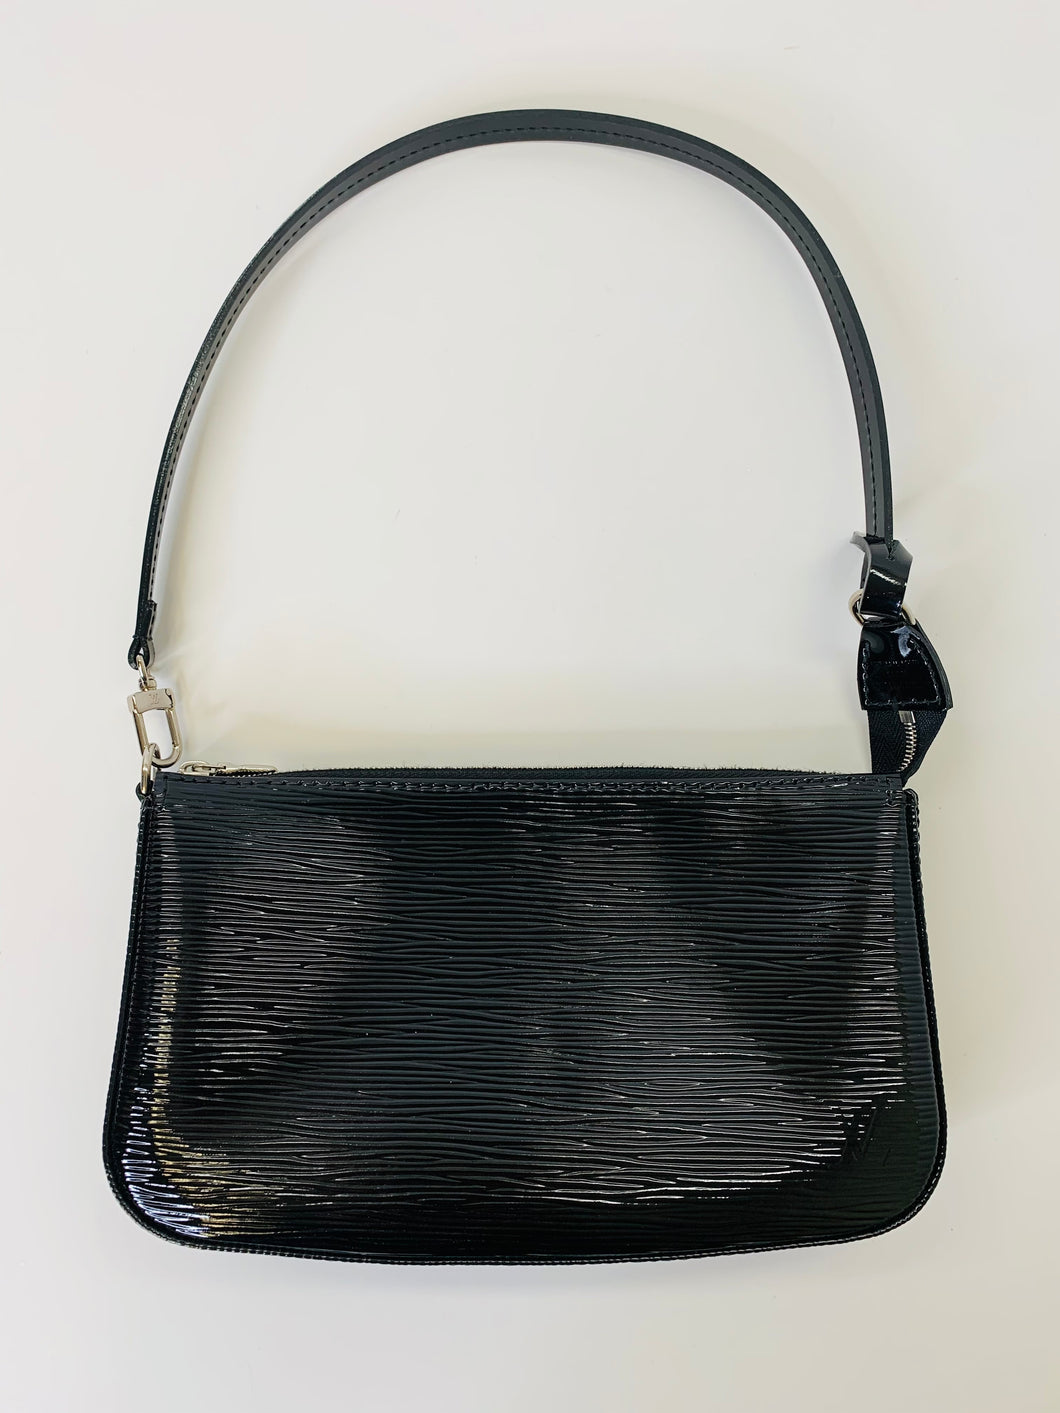 LOUIS VUITTON Epi Leather Pochette Accessories Handbag Clutch Dark Brown  Bag